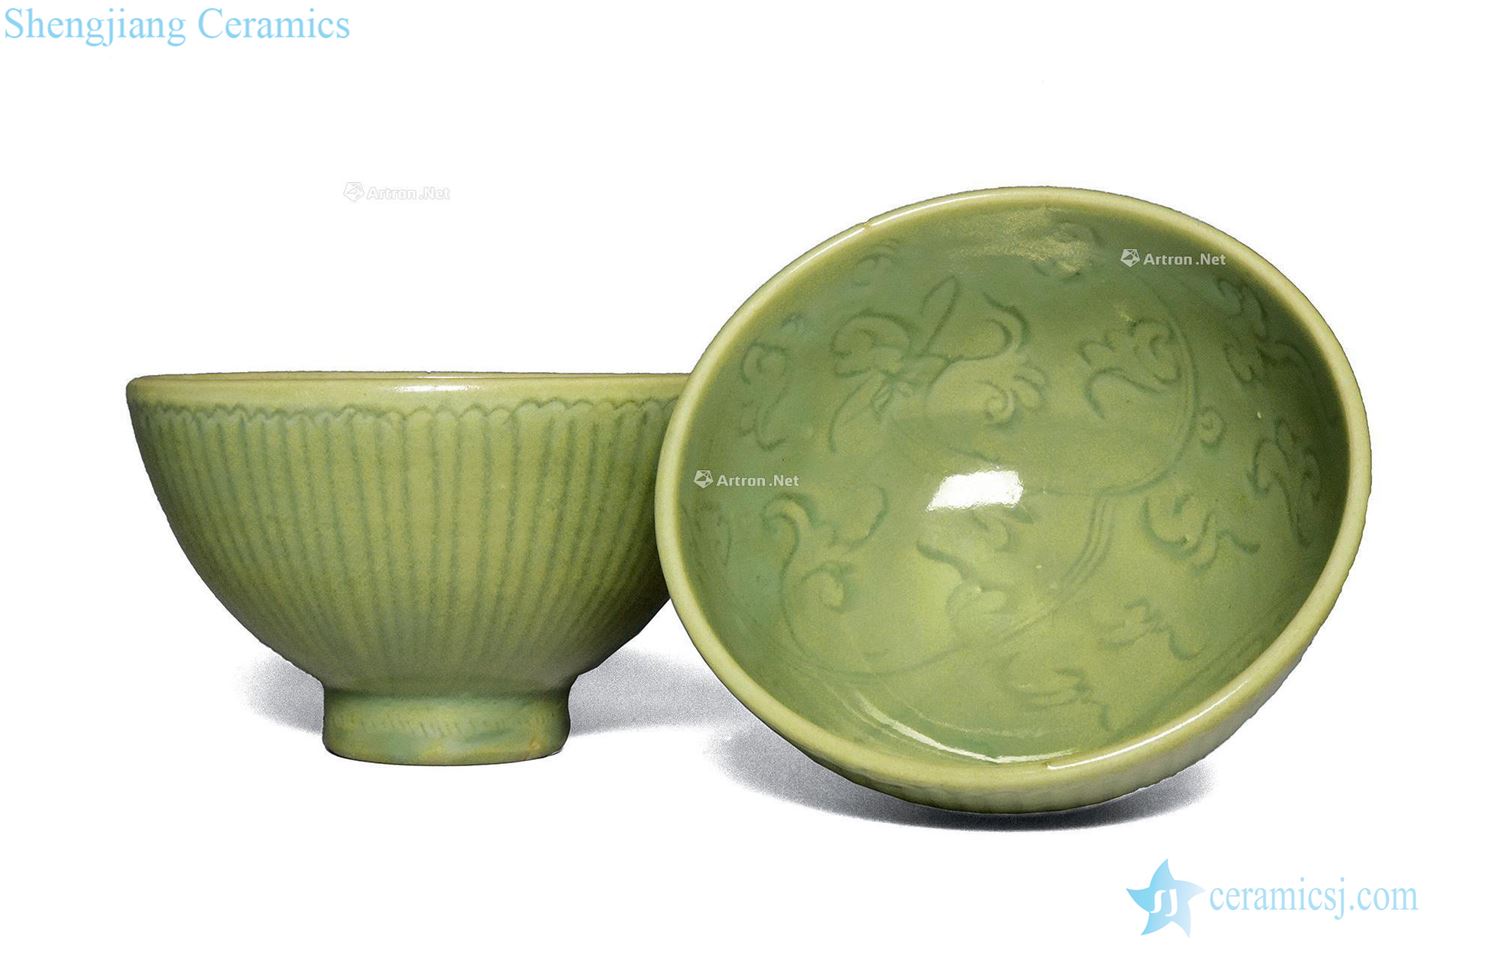 Yuan/Ming Longquan celadon green glaze hand-cut bowl (a)